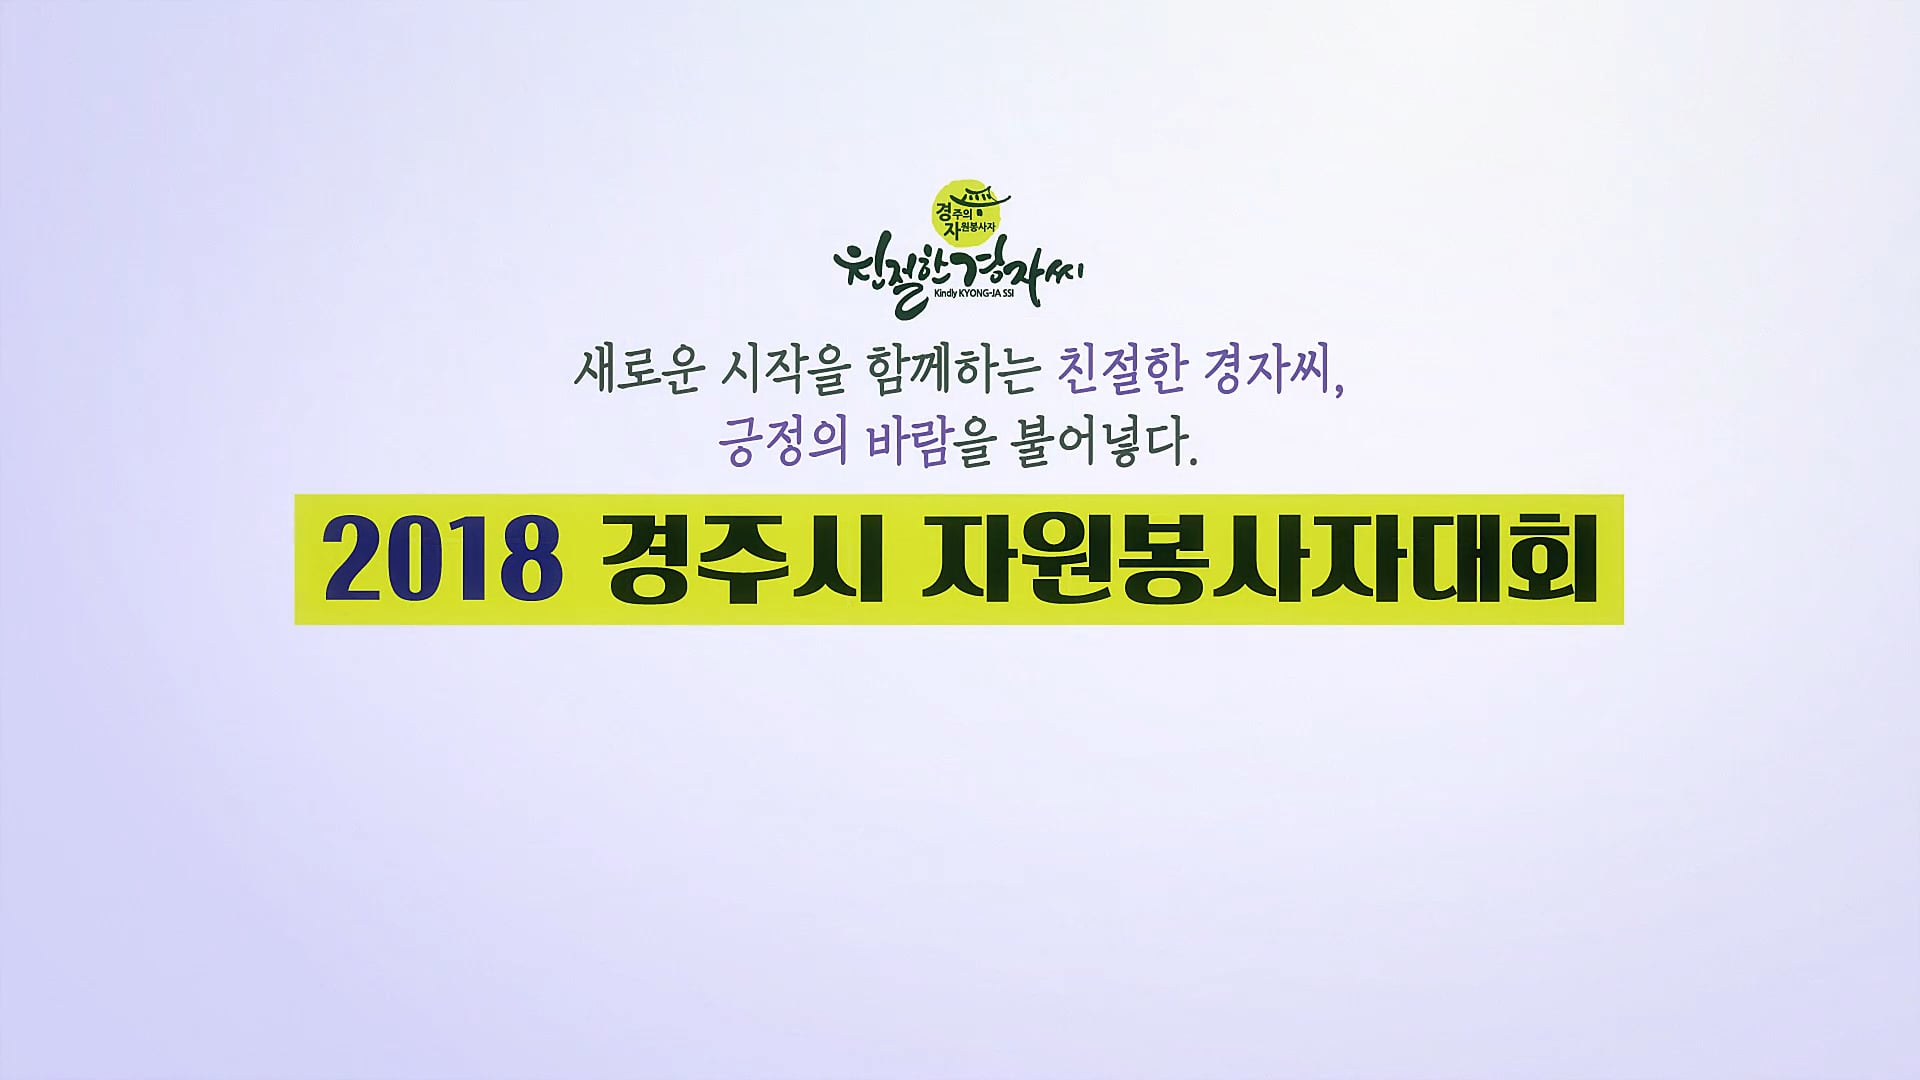 2018 경주시자원봉사자대회 사업소개